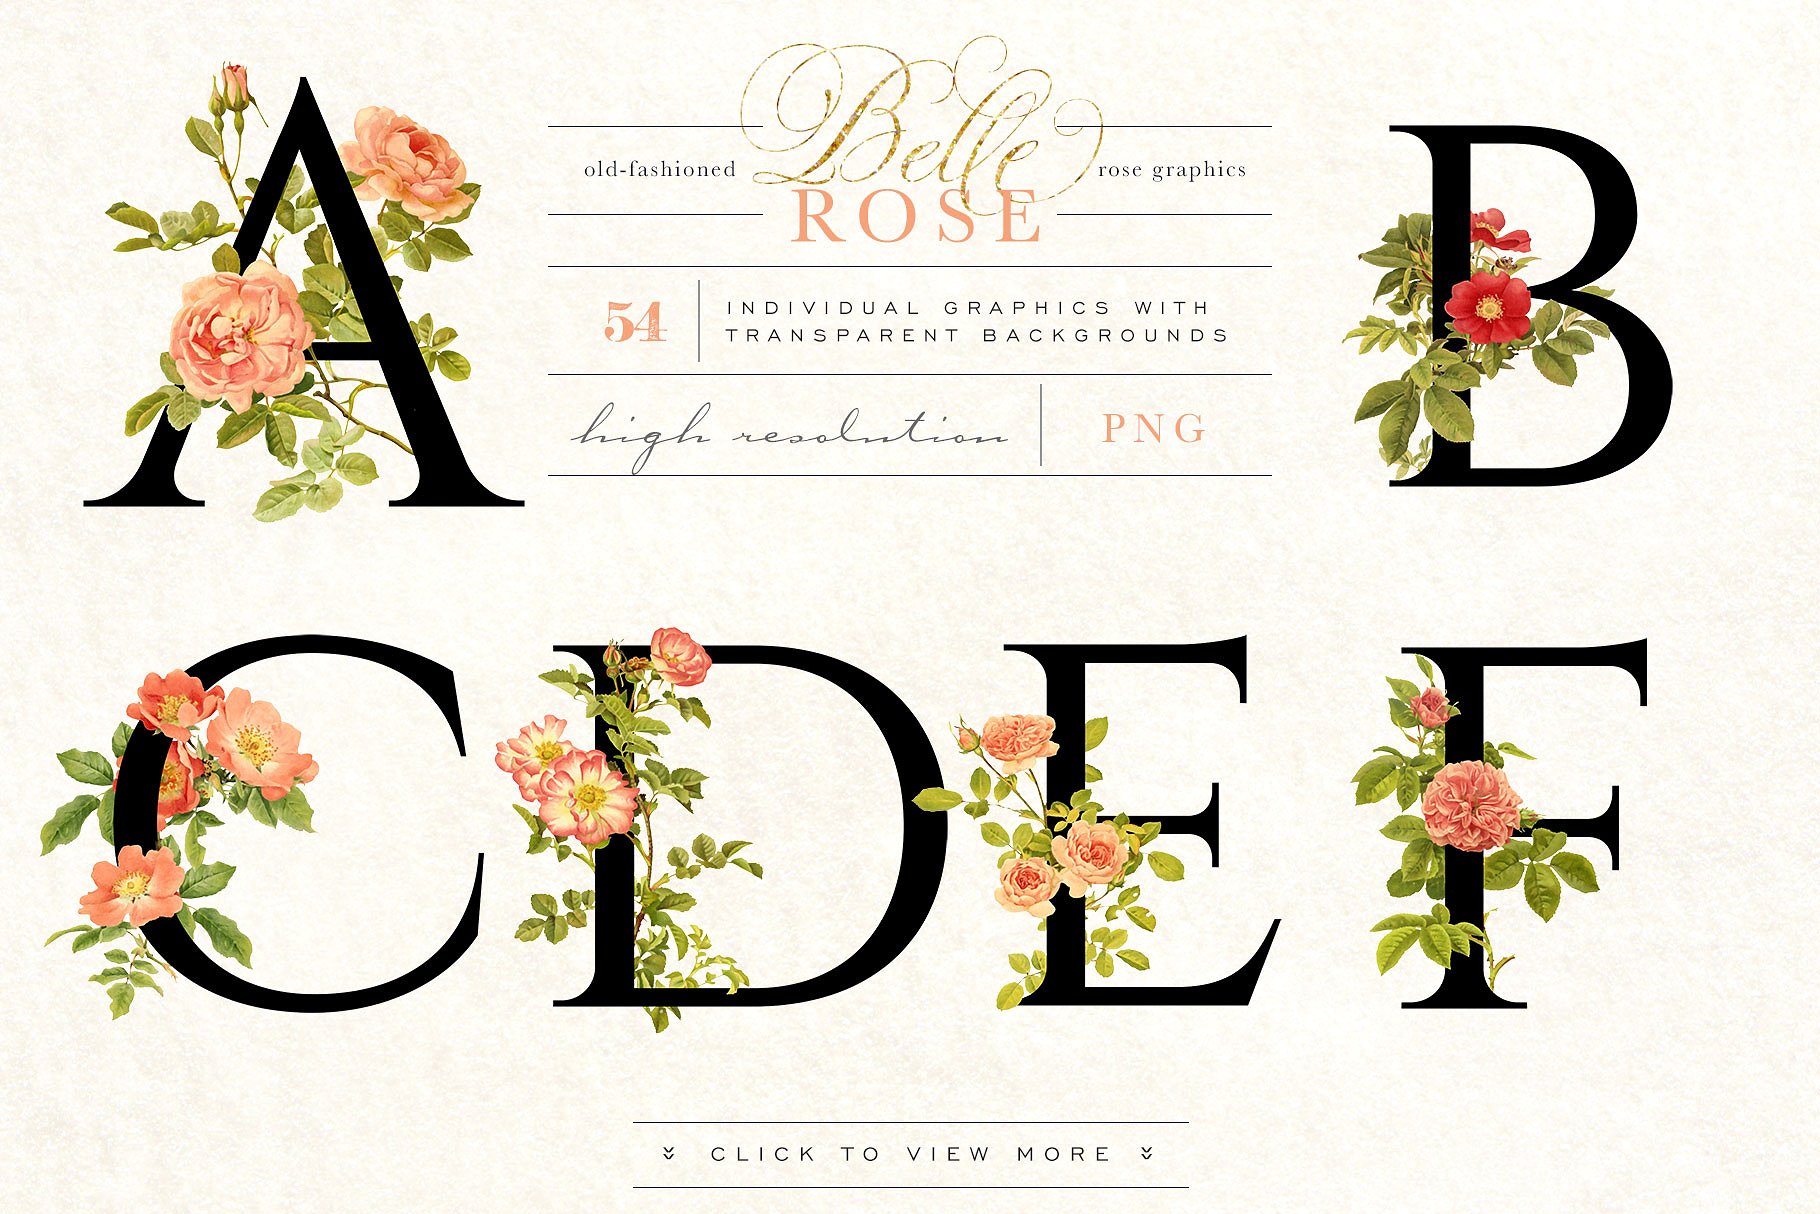 旧时尚老派水彩玫瑰花卉剪贴画合集 Belle Rose Antique Graphics Bundle插图(6)